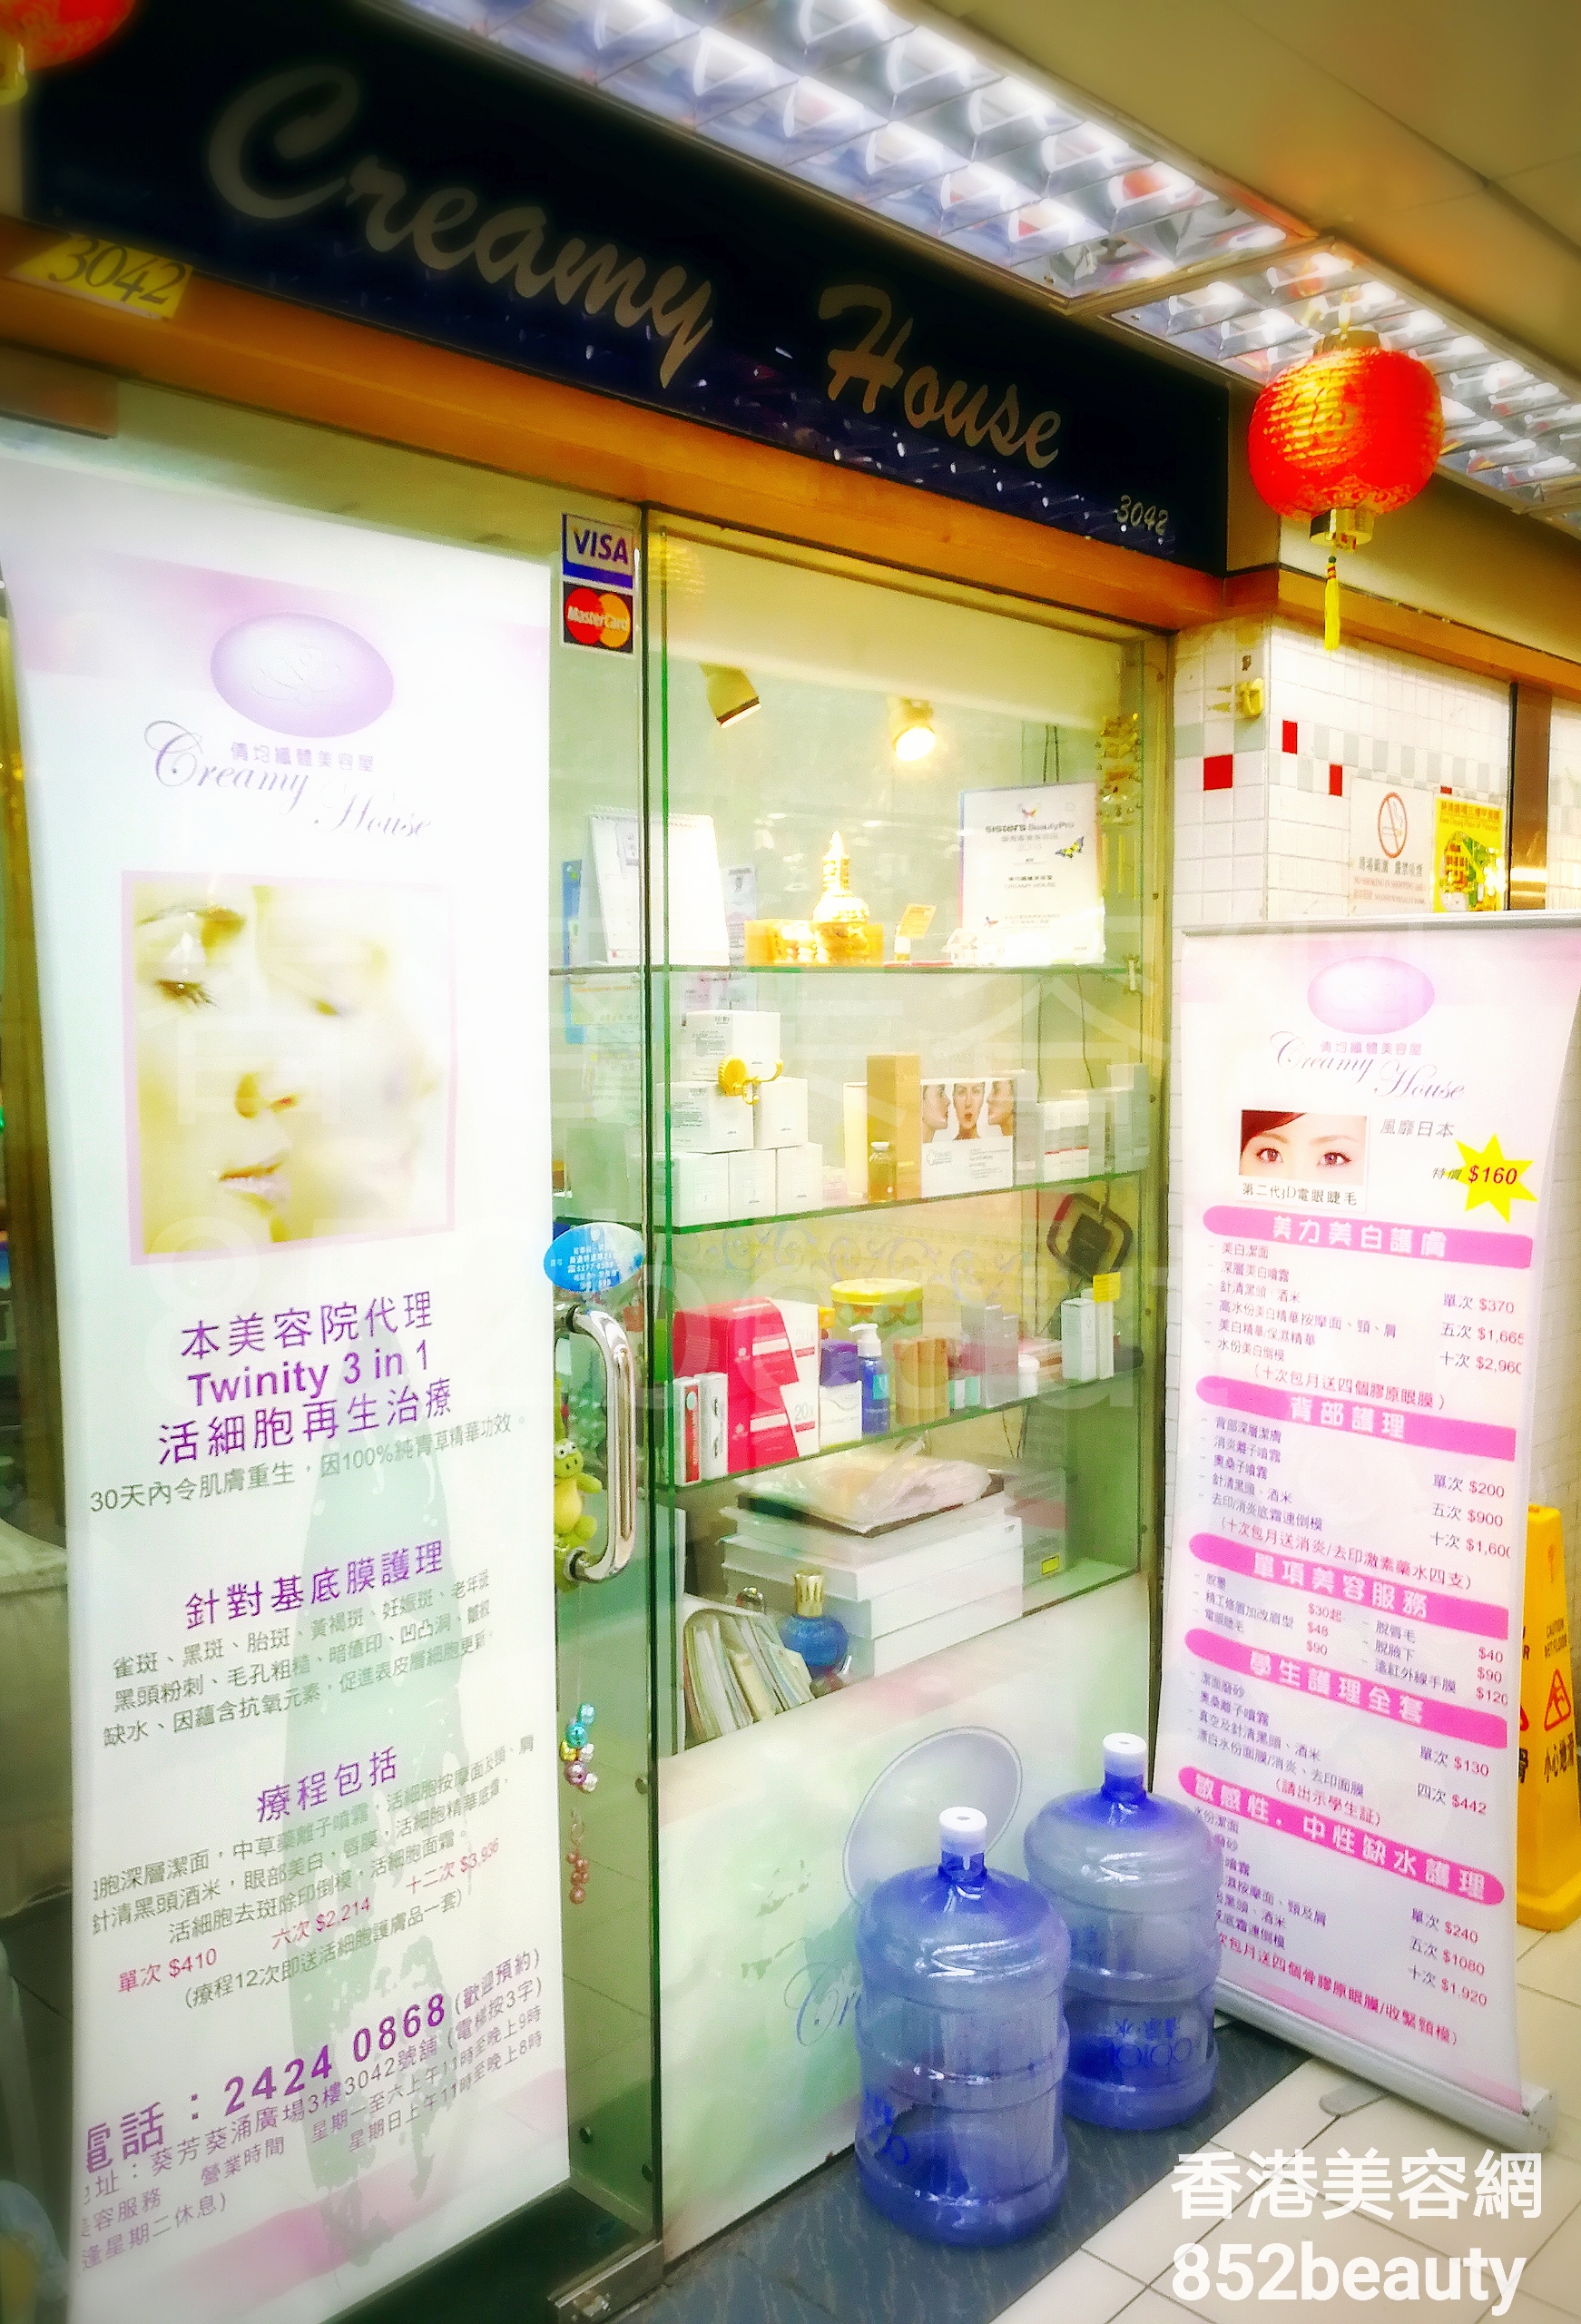 Facial Care: Creamy House